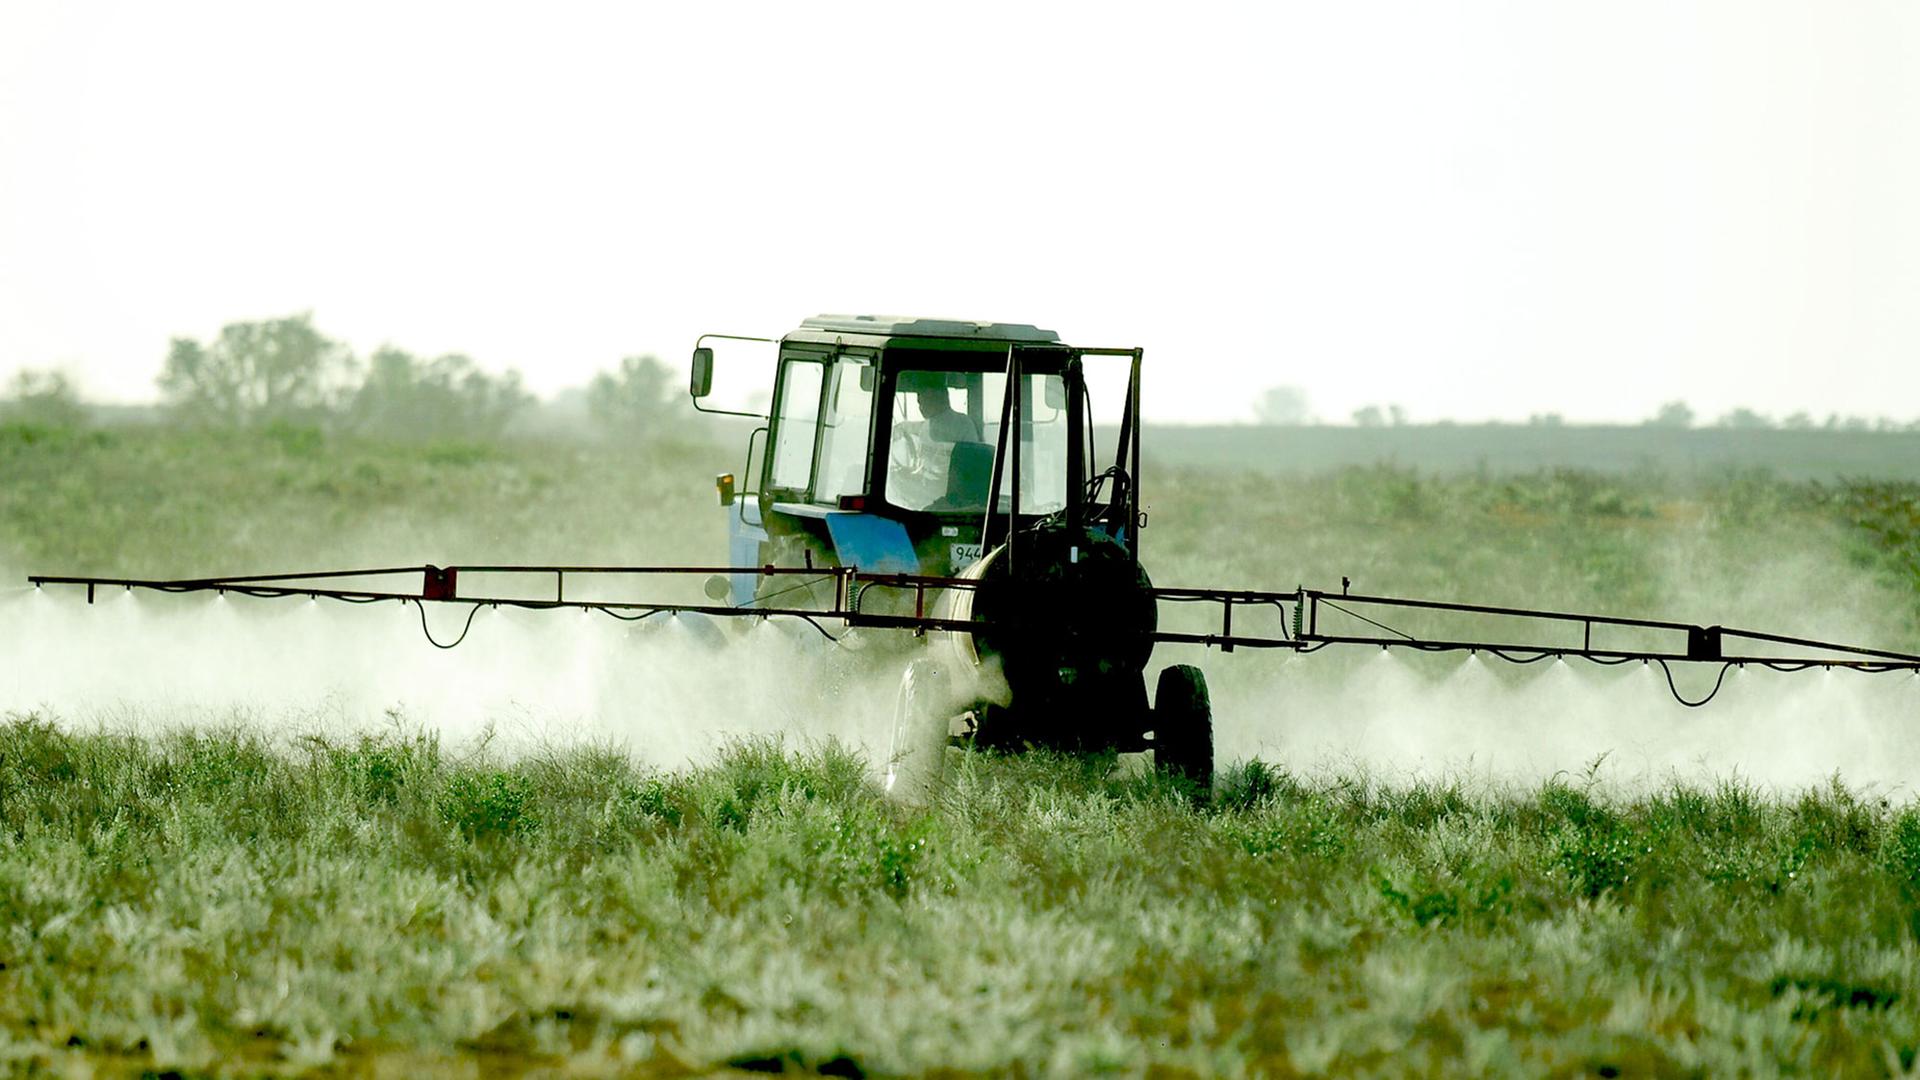 Einsatz von Pestiziden in Russland